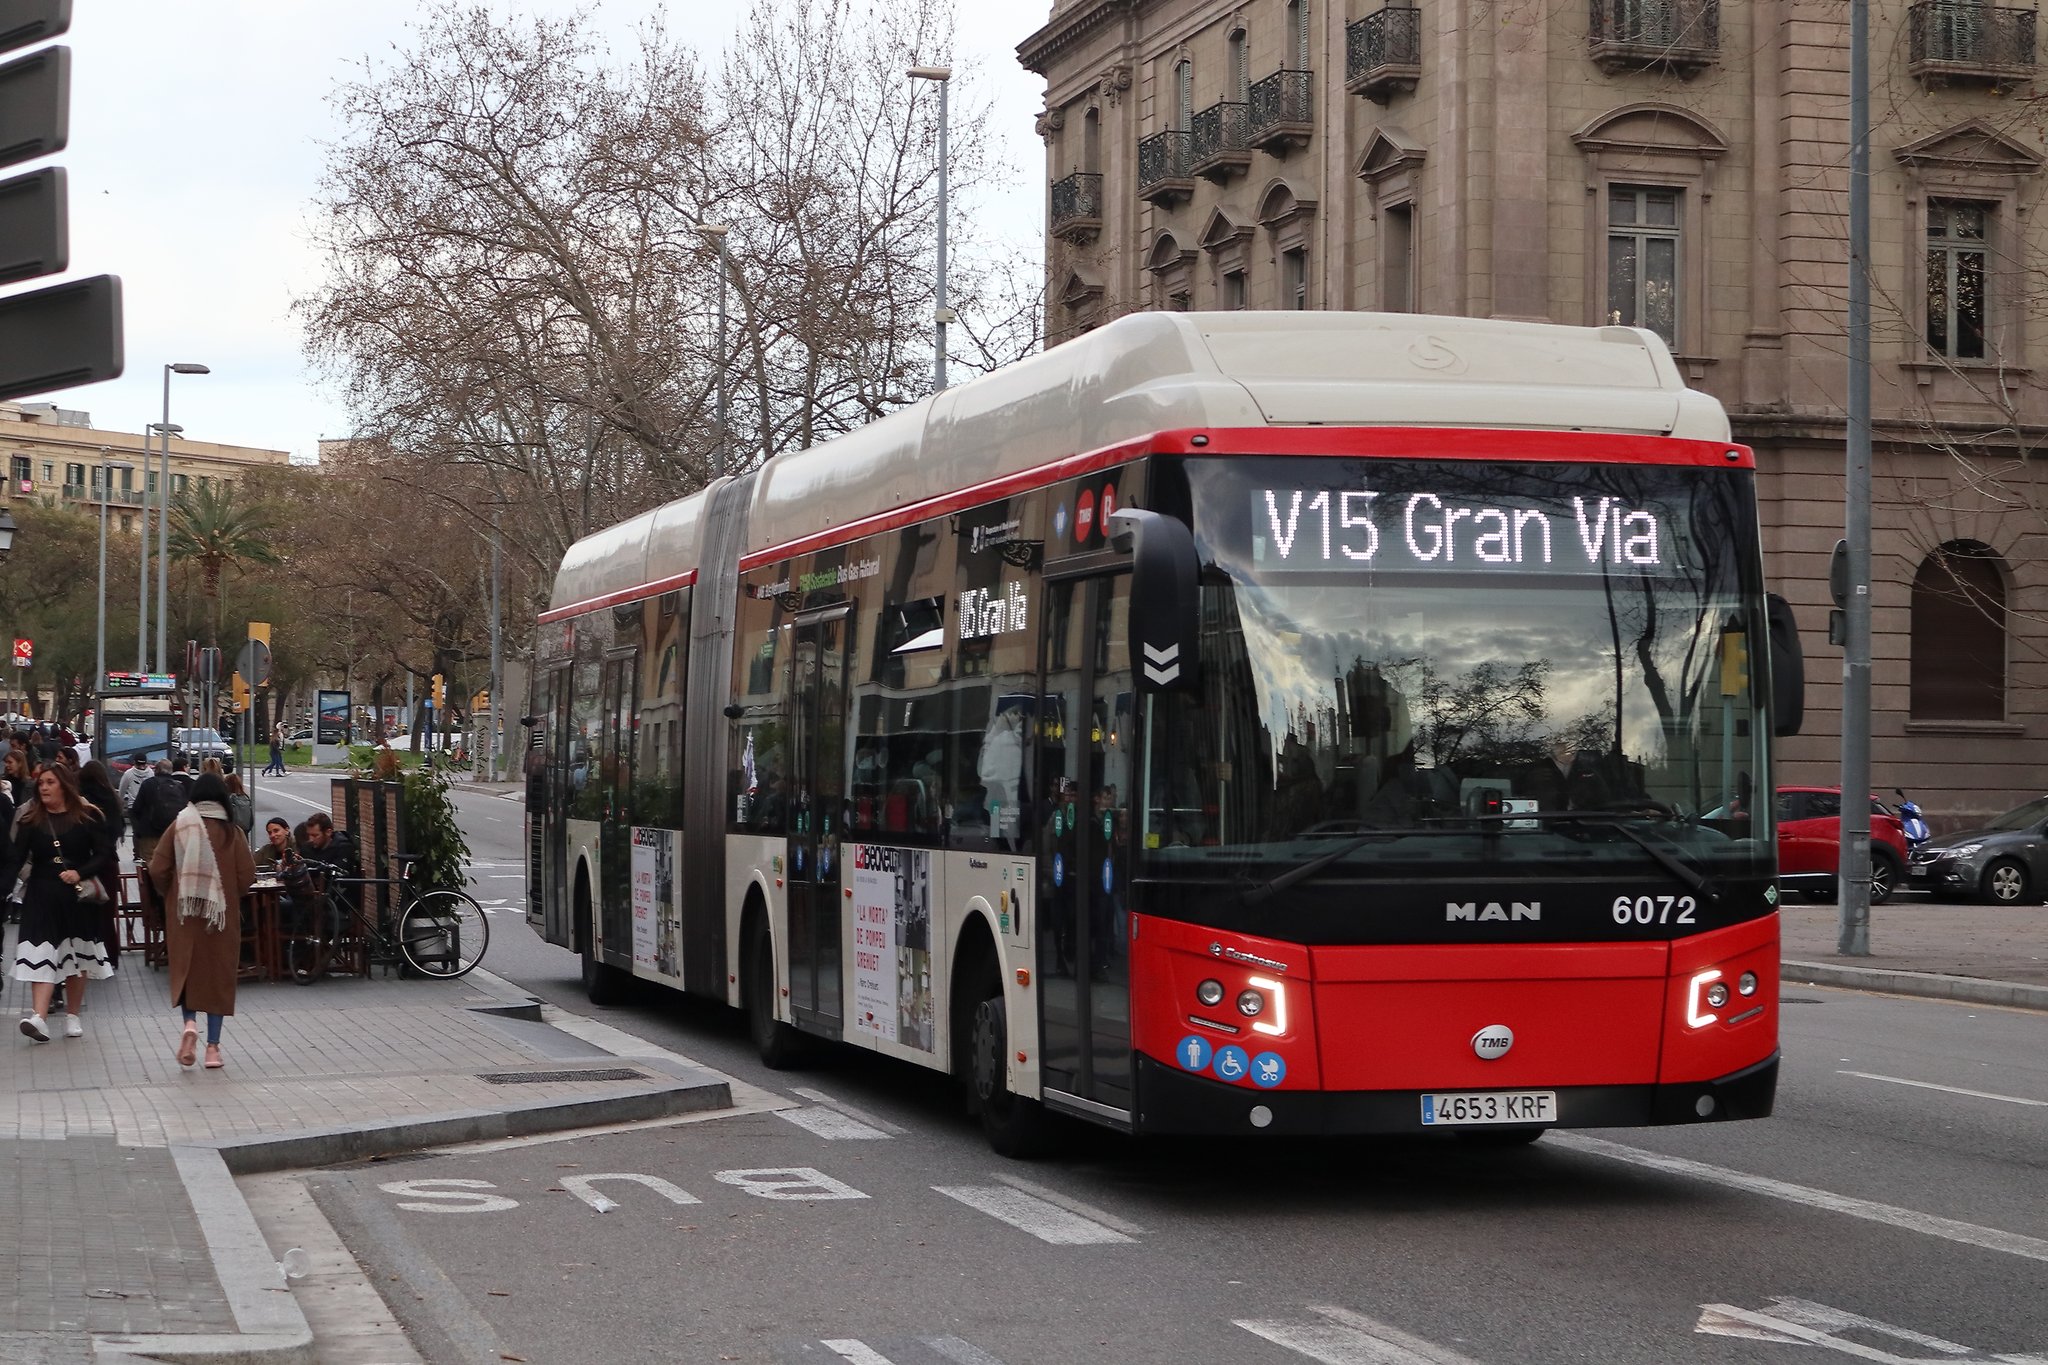 Enrique Cepeda Gonzalez on X: Llegan a Barcelona los primeros Autobuses  con matrícula iniciada por la letra L. Los primeros son de #autocorb y  #monbus.  / X